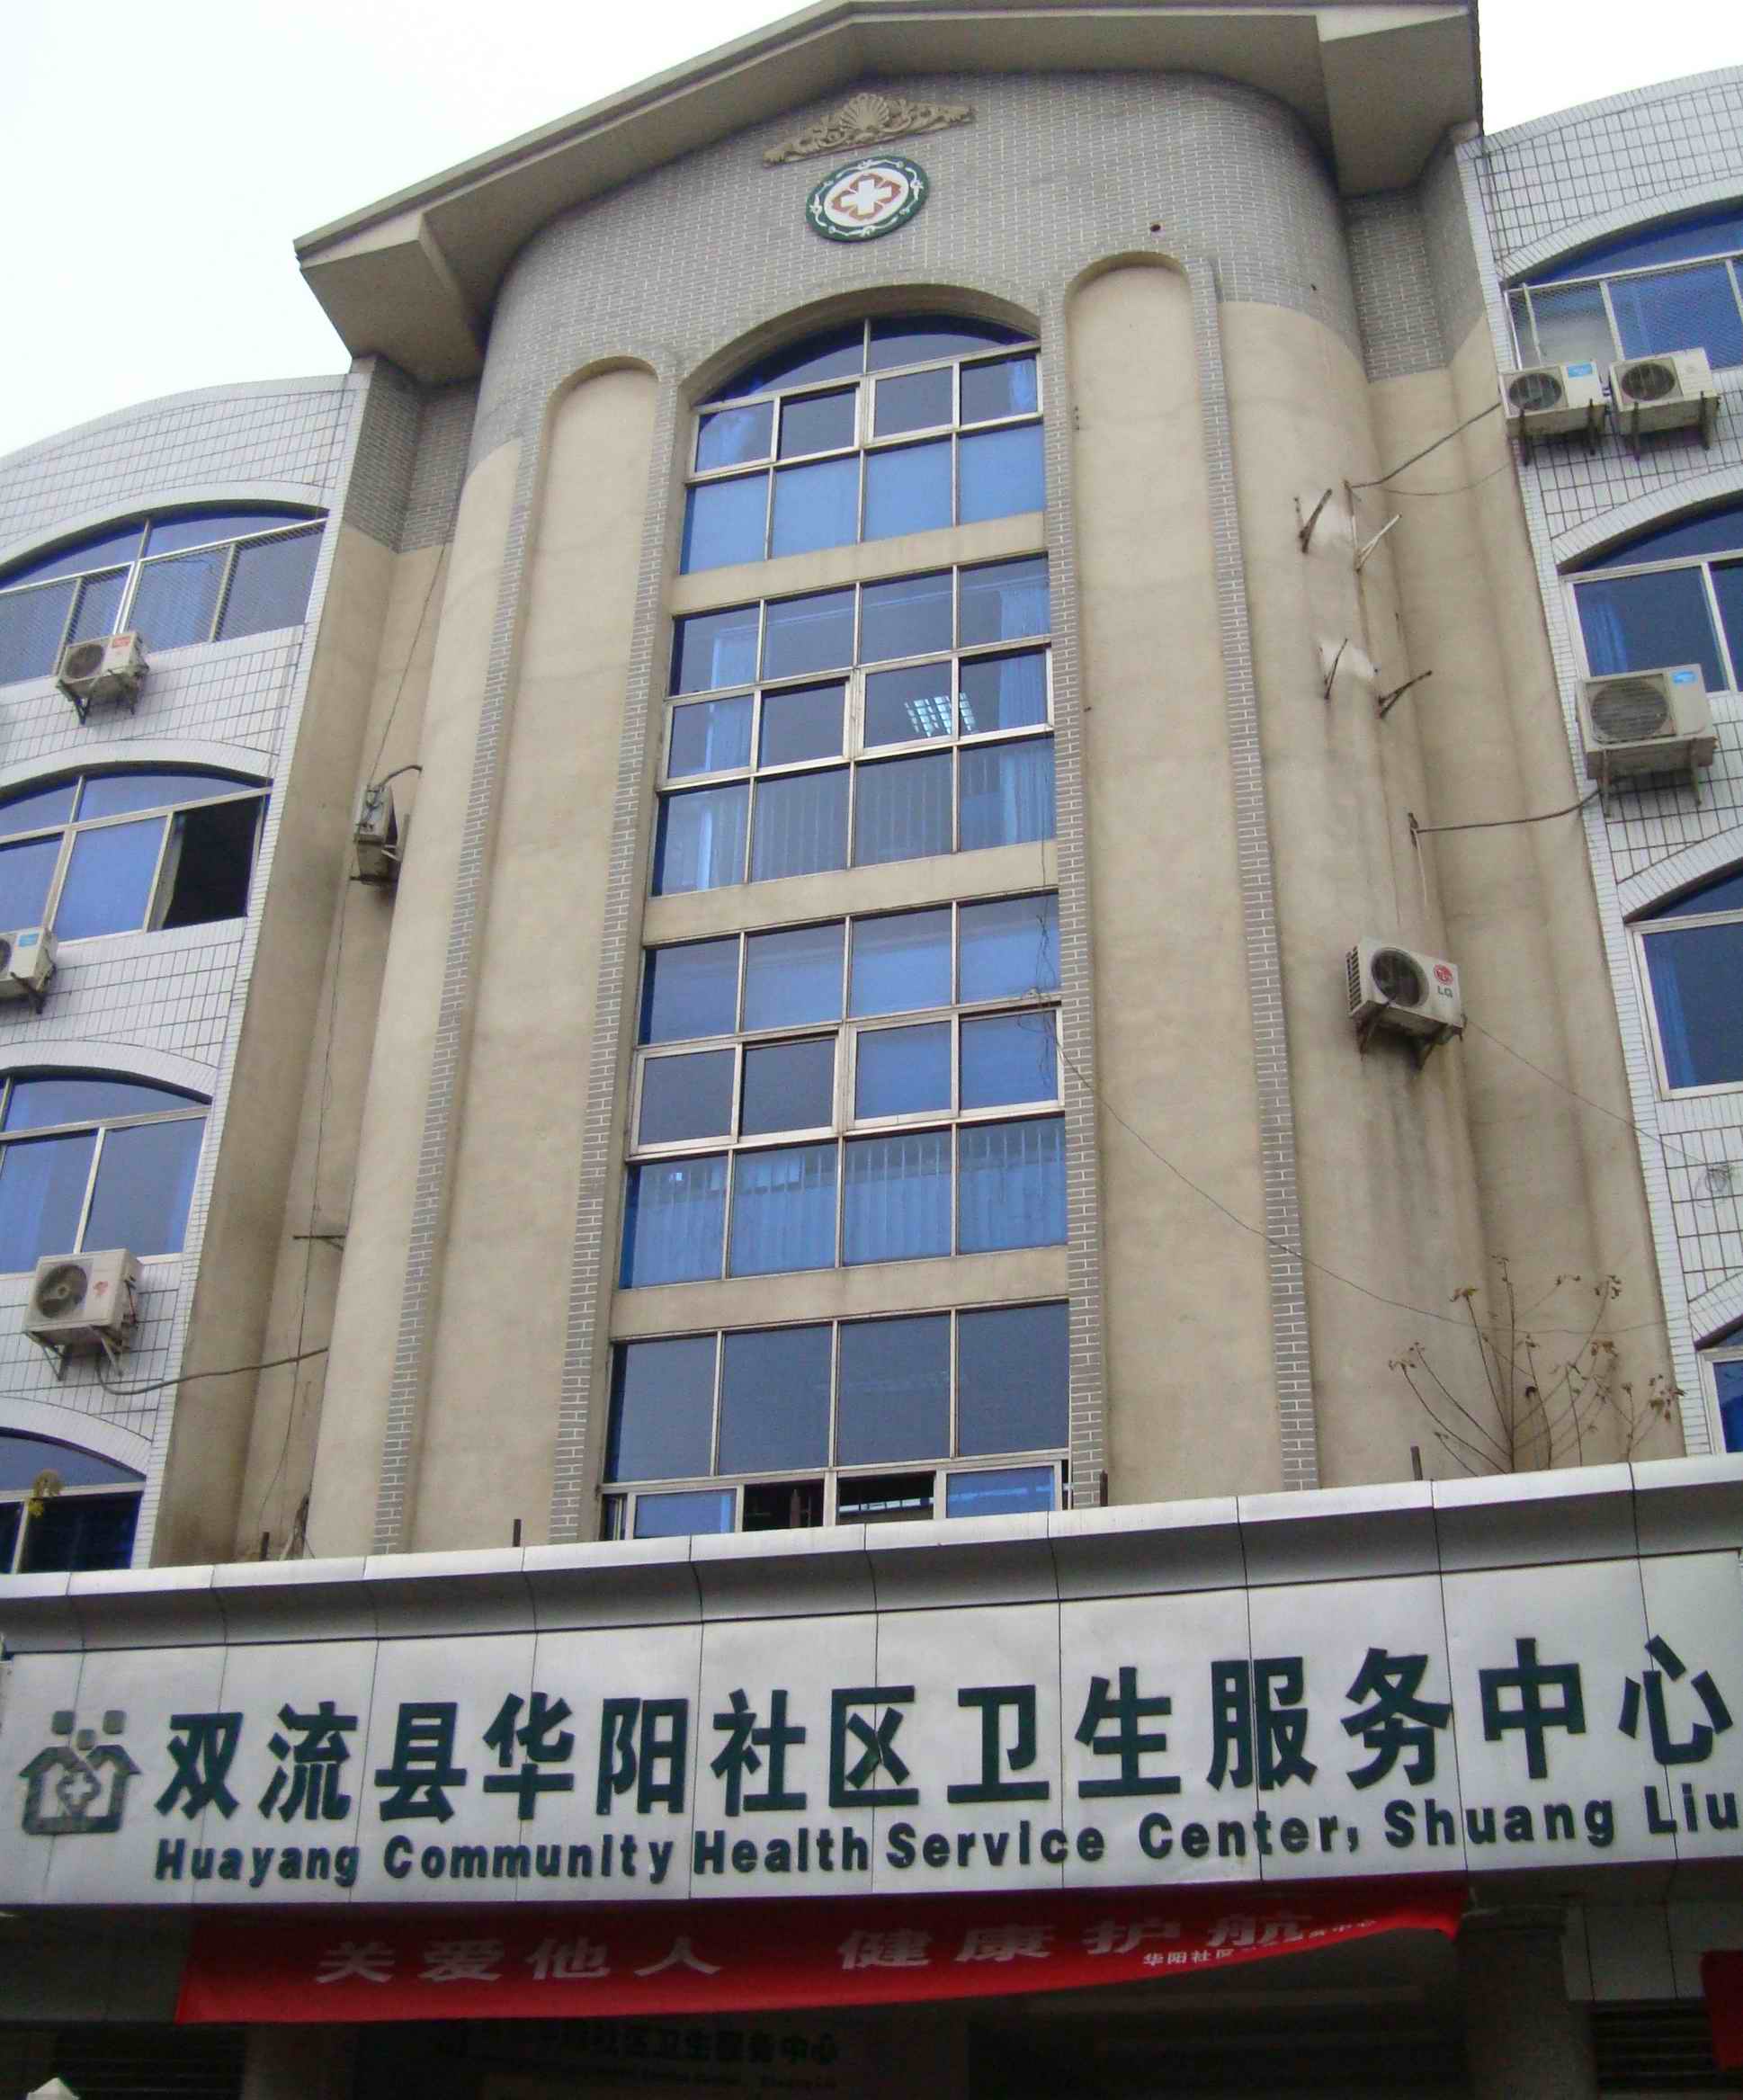 双流县华阳社区卫生服务中心